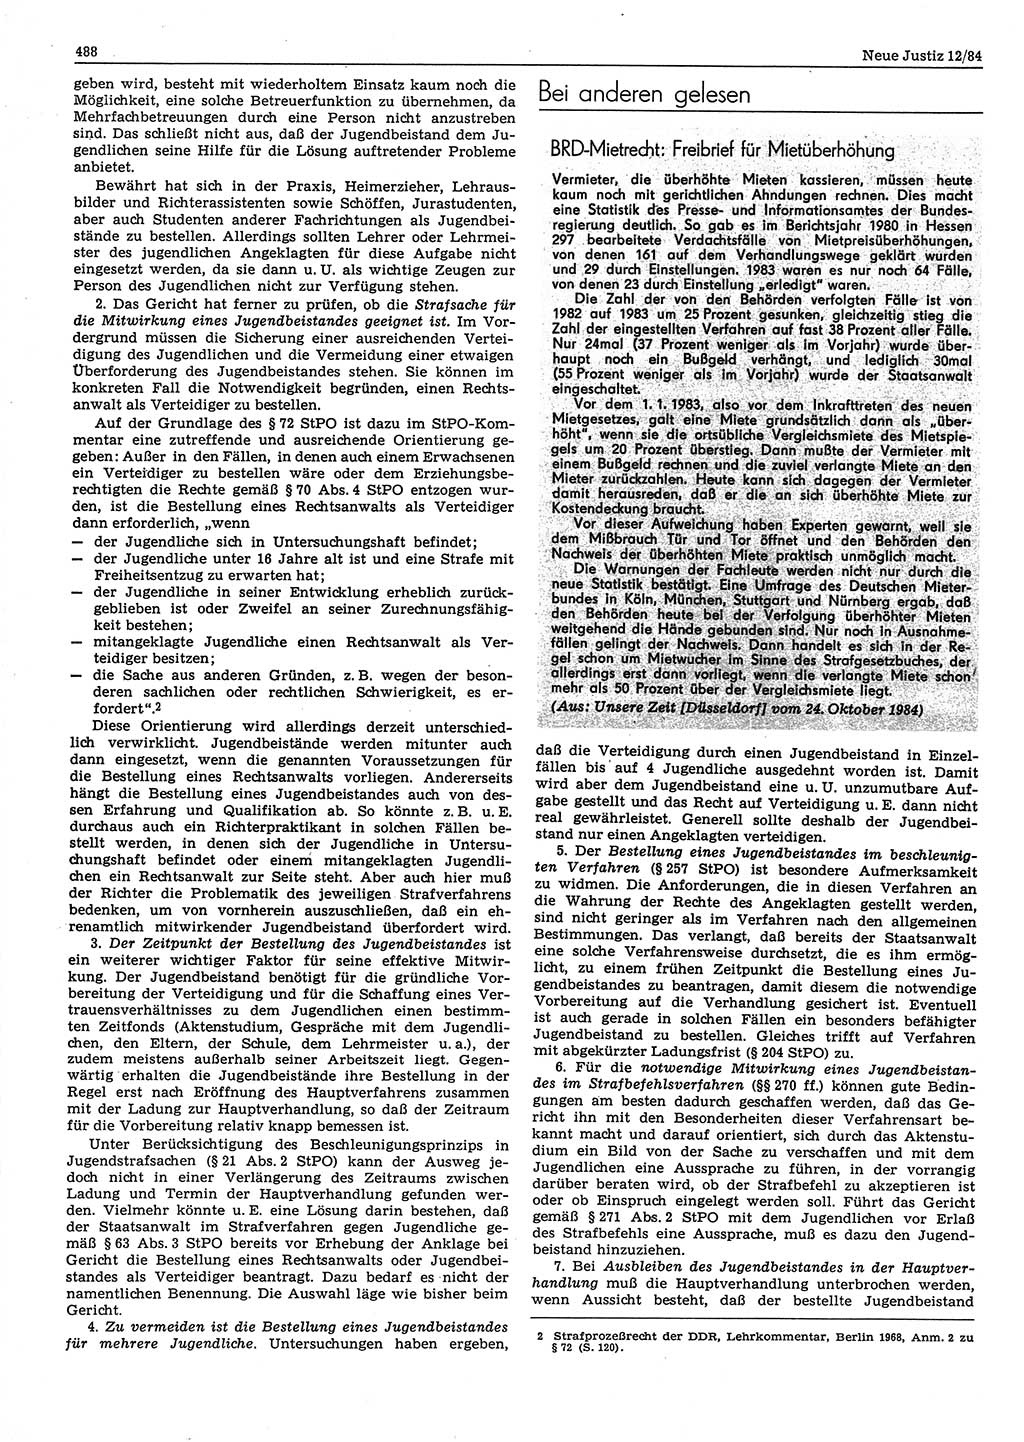 Neue Justiz (NJ), Zeitschrift für sozialistisches Recht und Gesetzlichkeit [Deutsche Demokratische Republik (DDR)], 38. Jahrgang 1984, Seite 488 (NJ DDR 1984, S. 488)